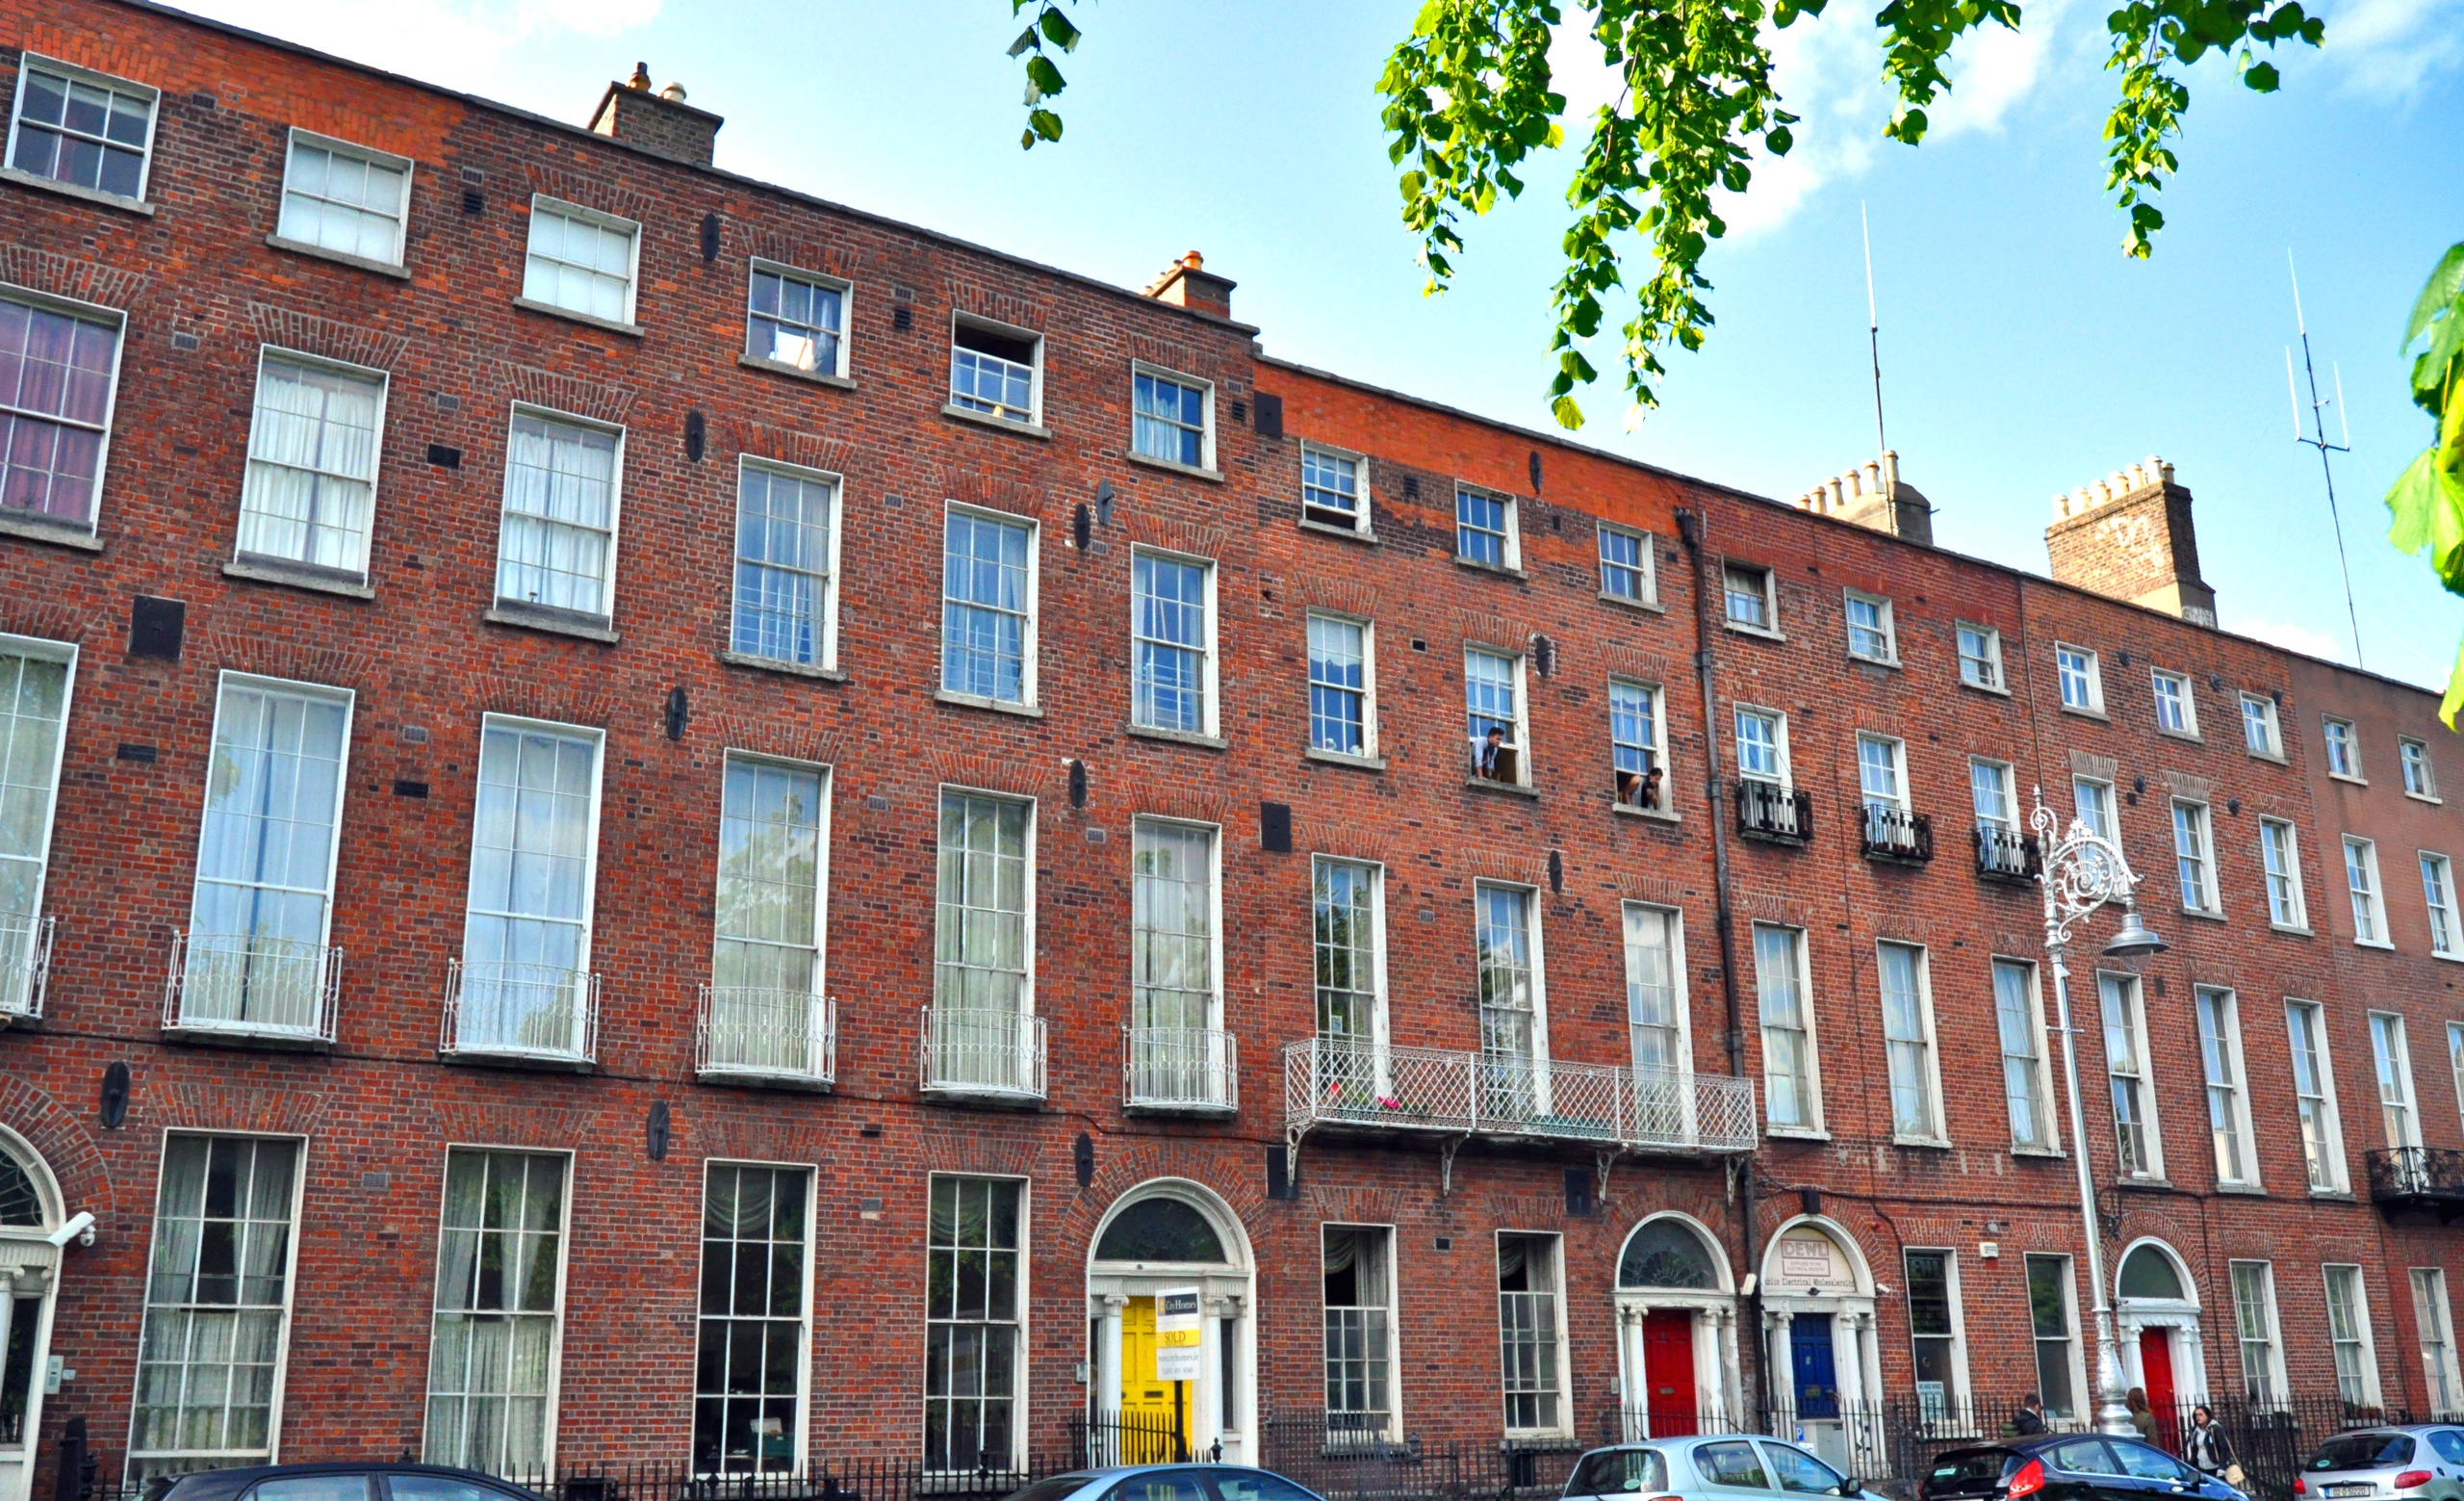 Sights & Pints in Private - Alojamientos en Dublín